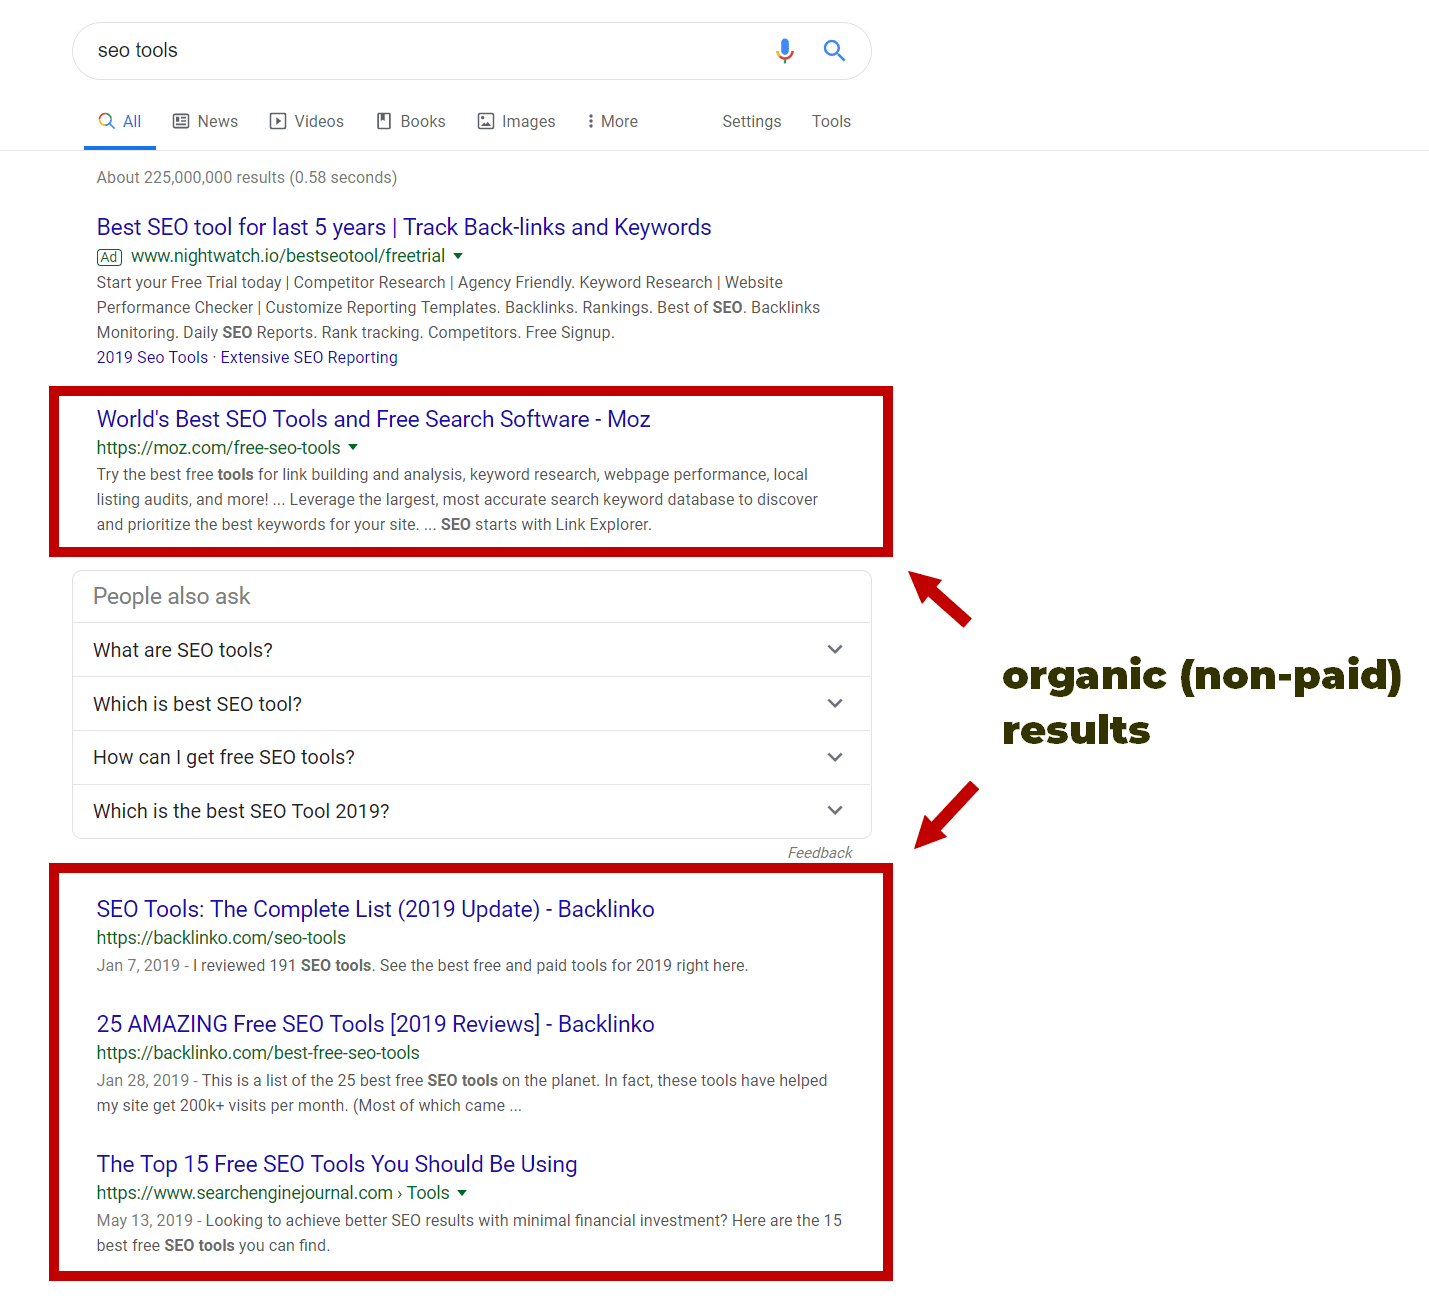 Risultati organici di Google